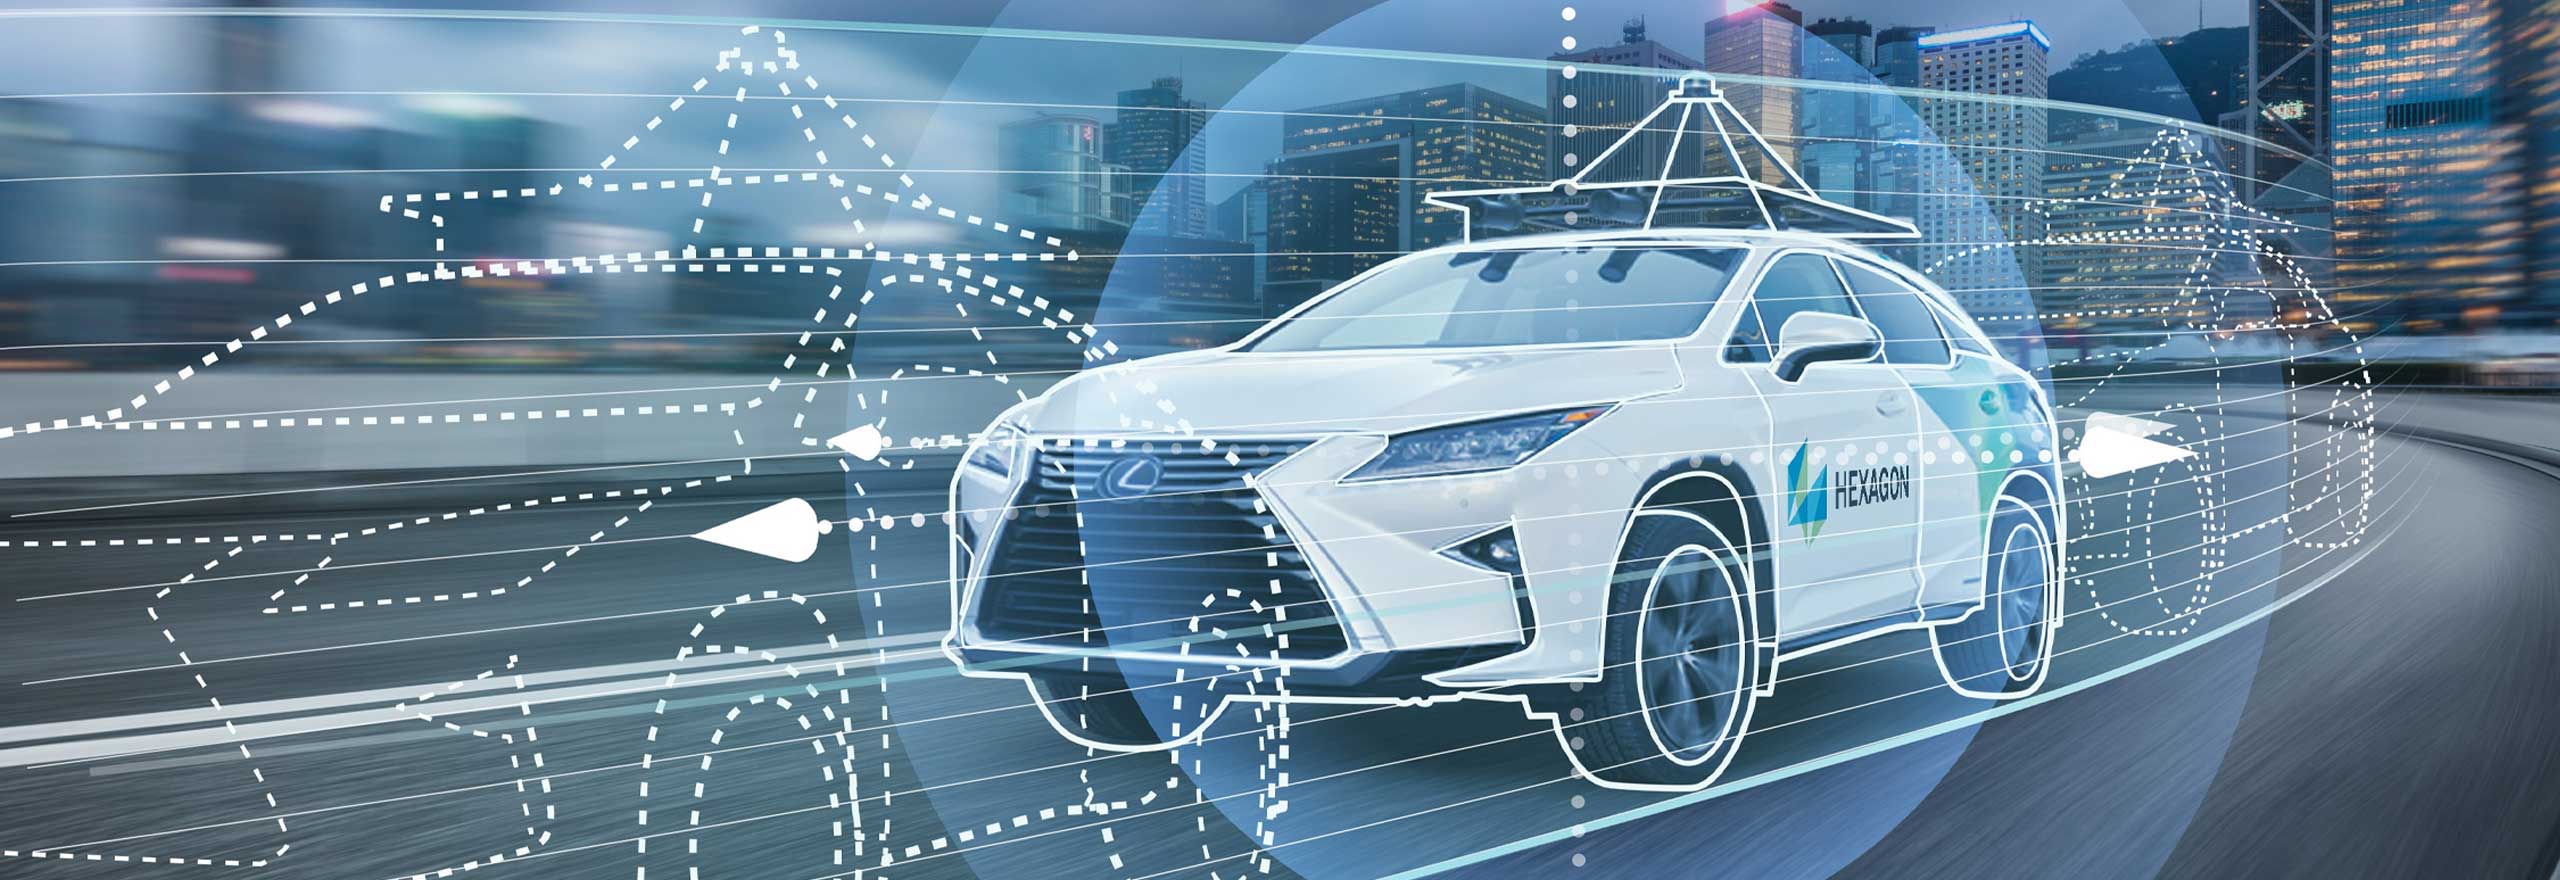 Une voiture autonome roulant sur la route grâce à l’utilisation de technologies de positionnement et de perception et à la fusion de capteurs.